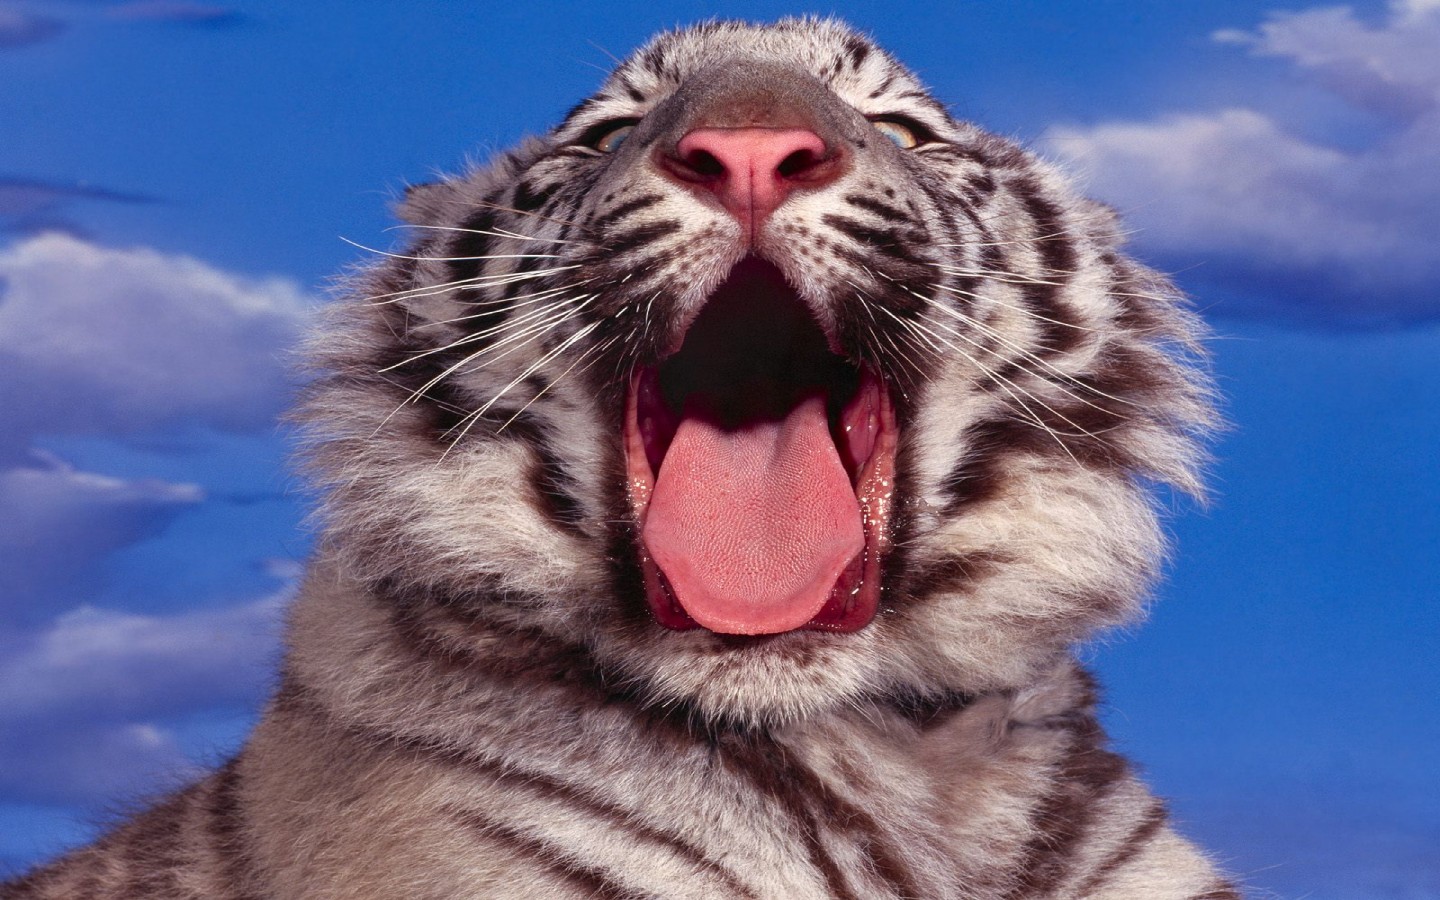 Язык тигра покрыт острыми, маленькими, похожими на шипы крючковатыми выступами